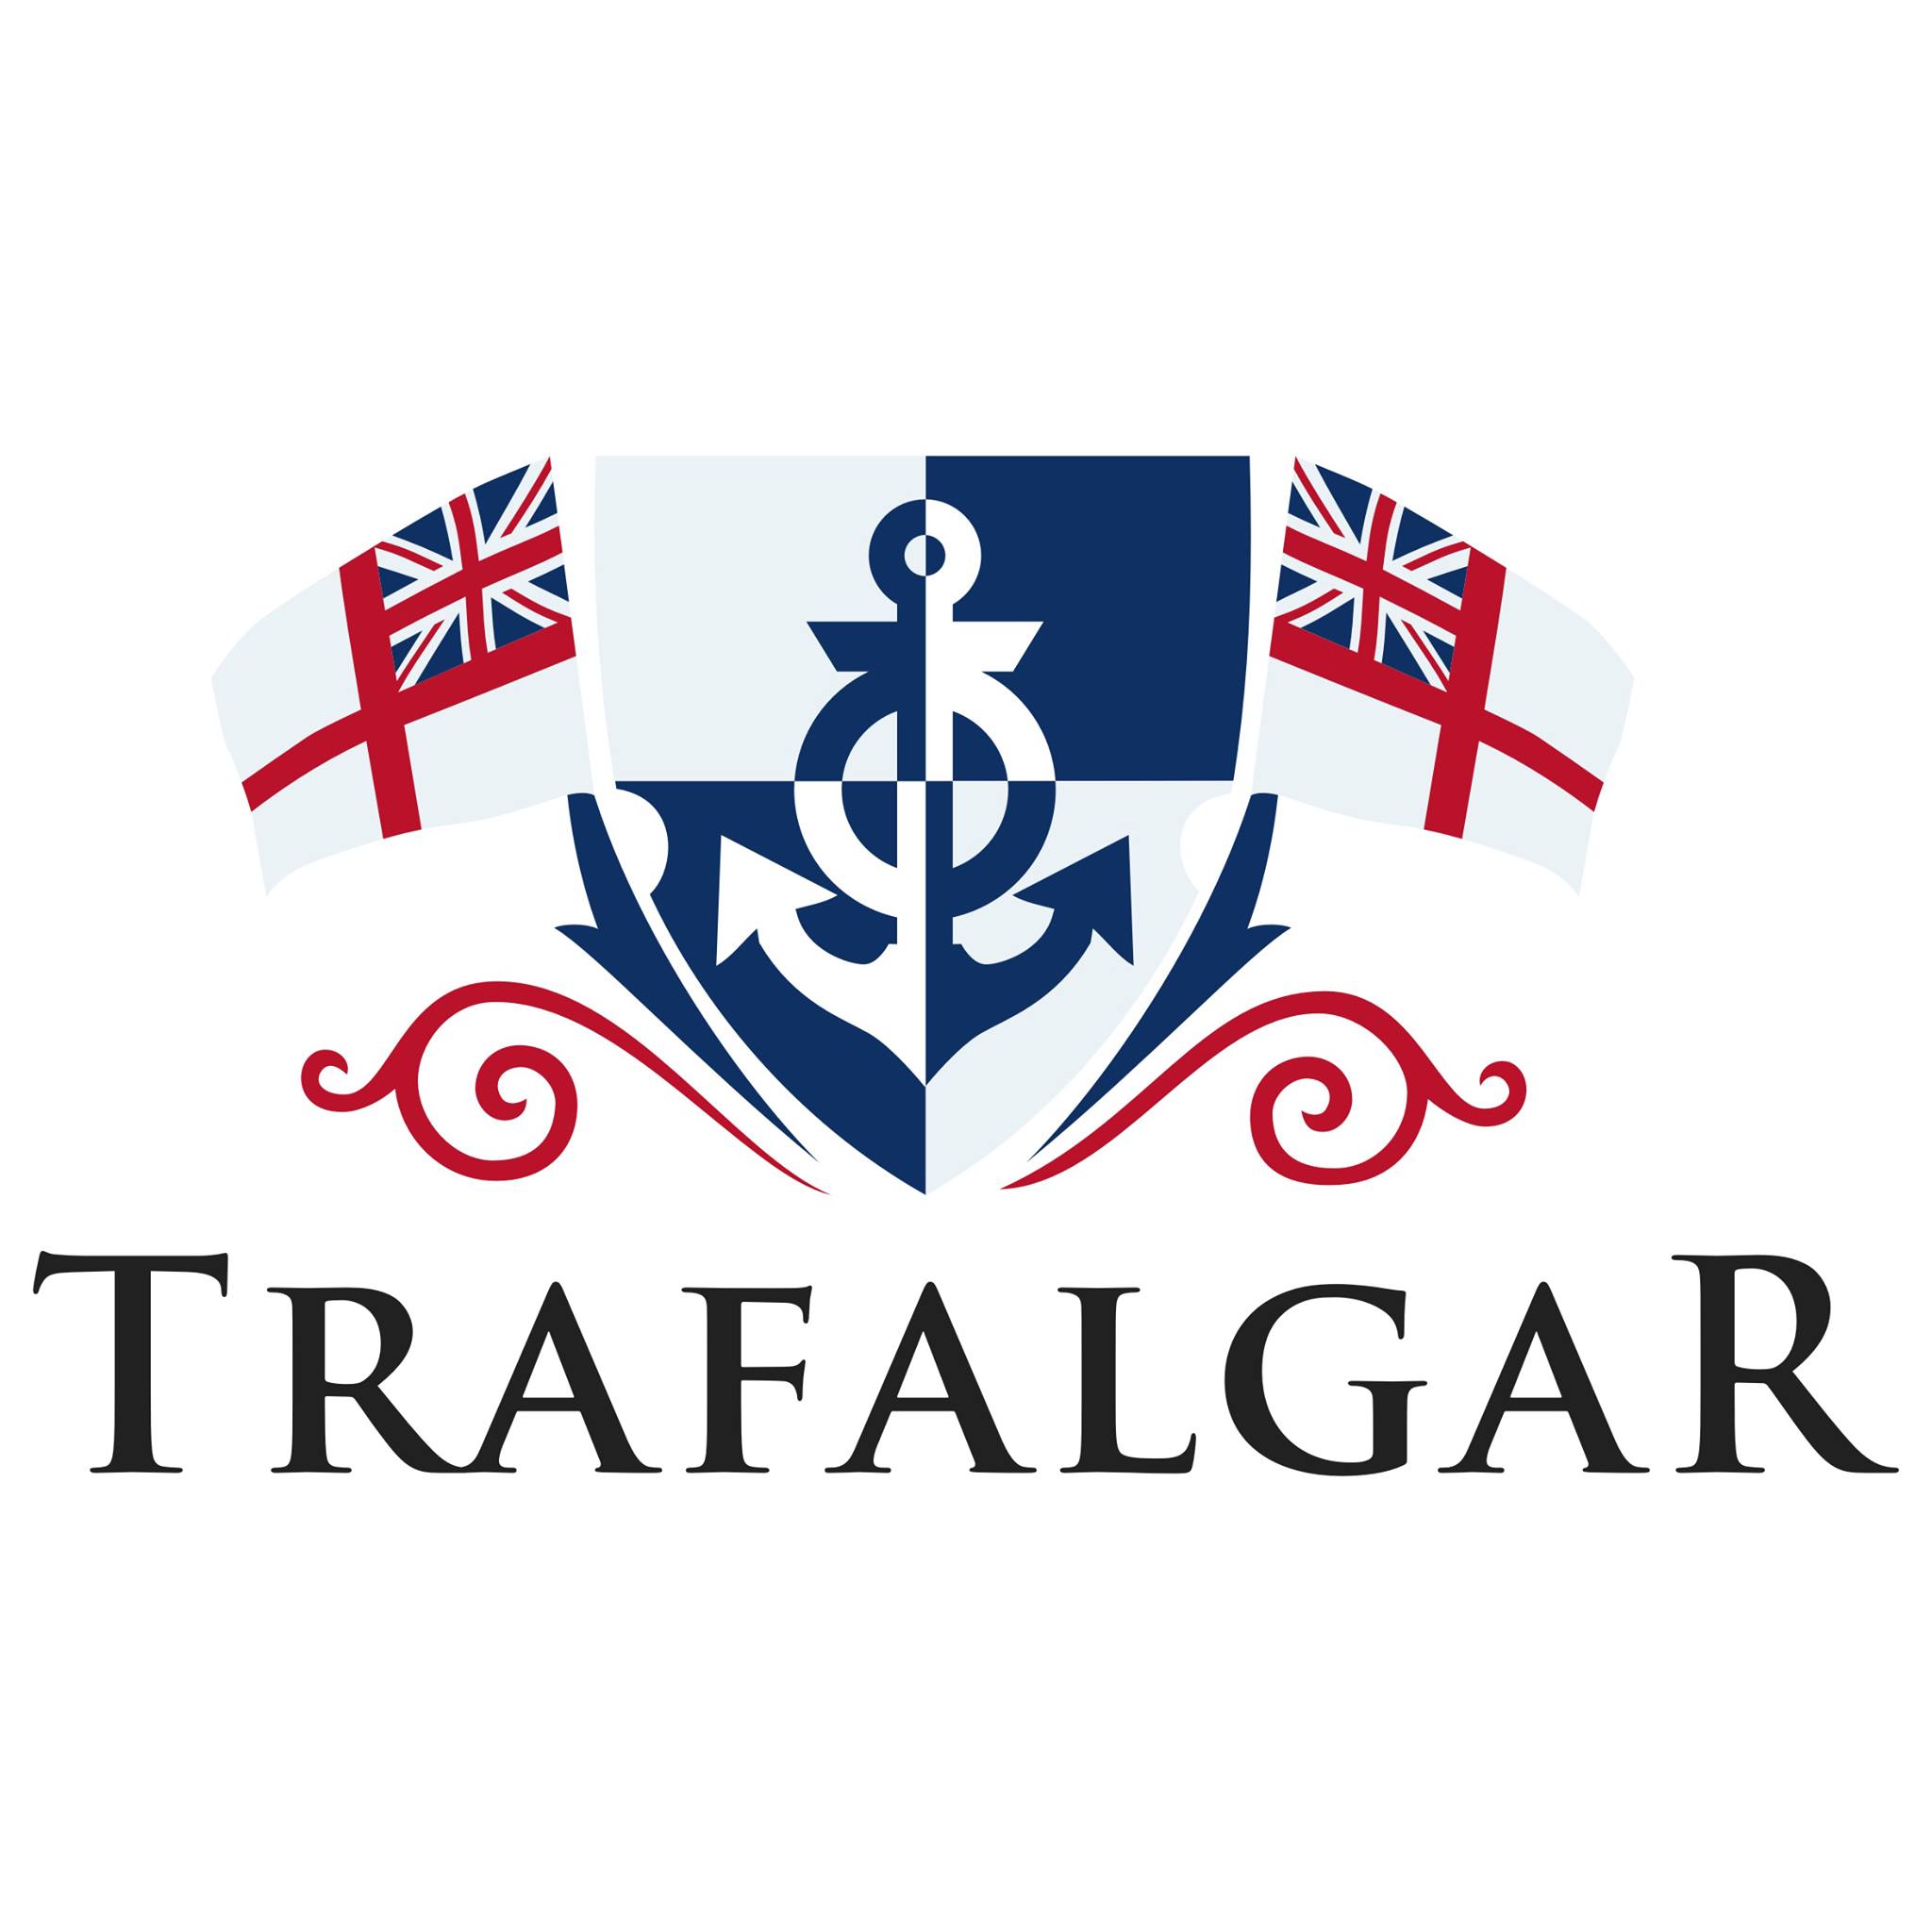 the trafalgar logo